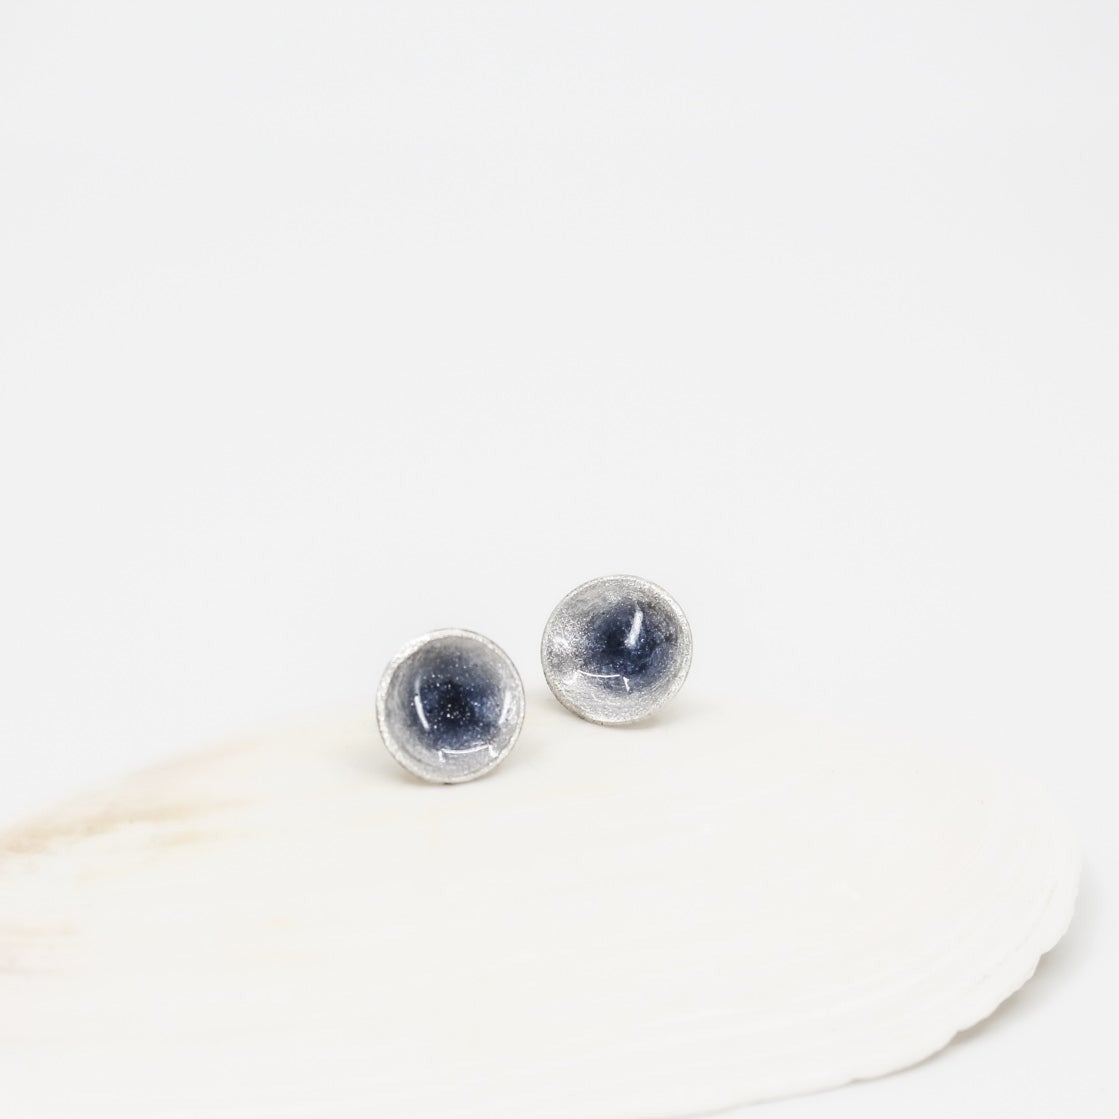 petits clous ronds gris bleu en argent sterling 925 écologique • recouverts de résine